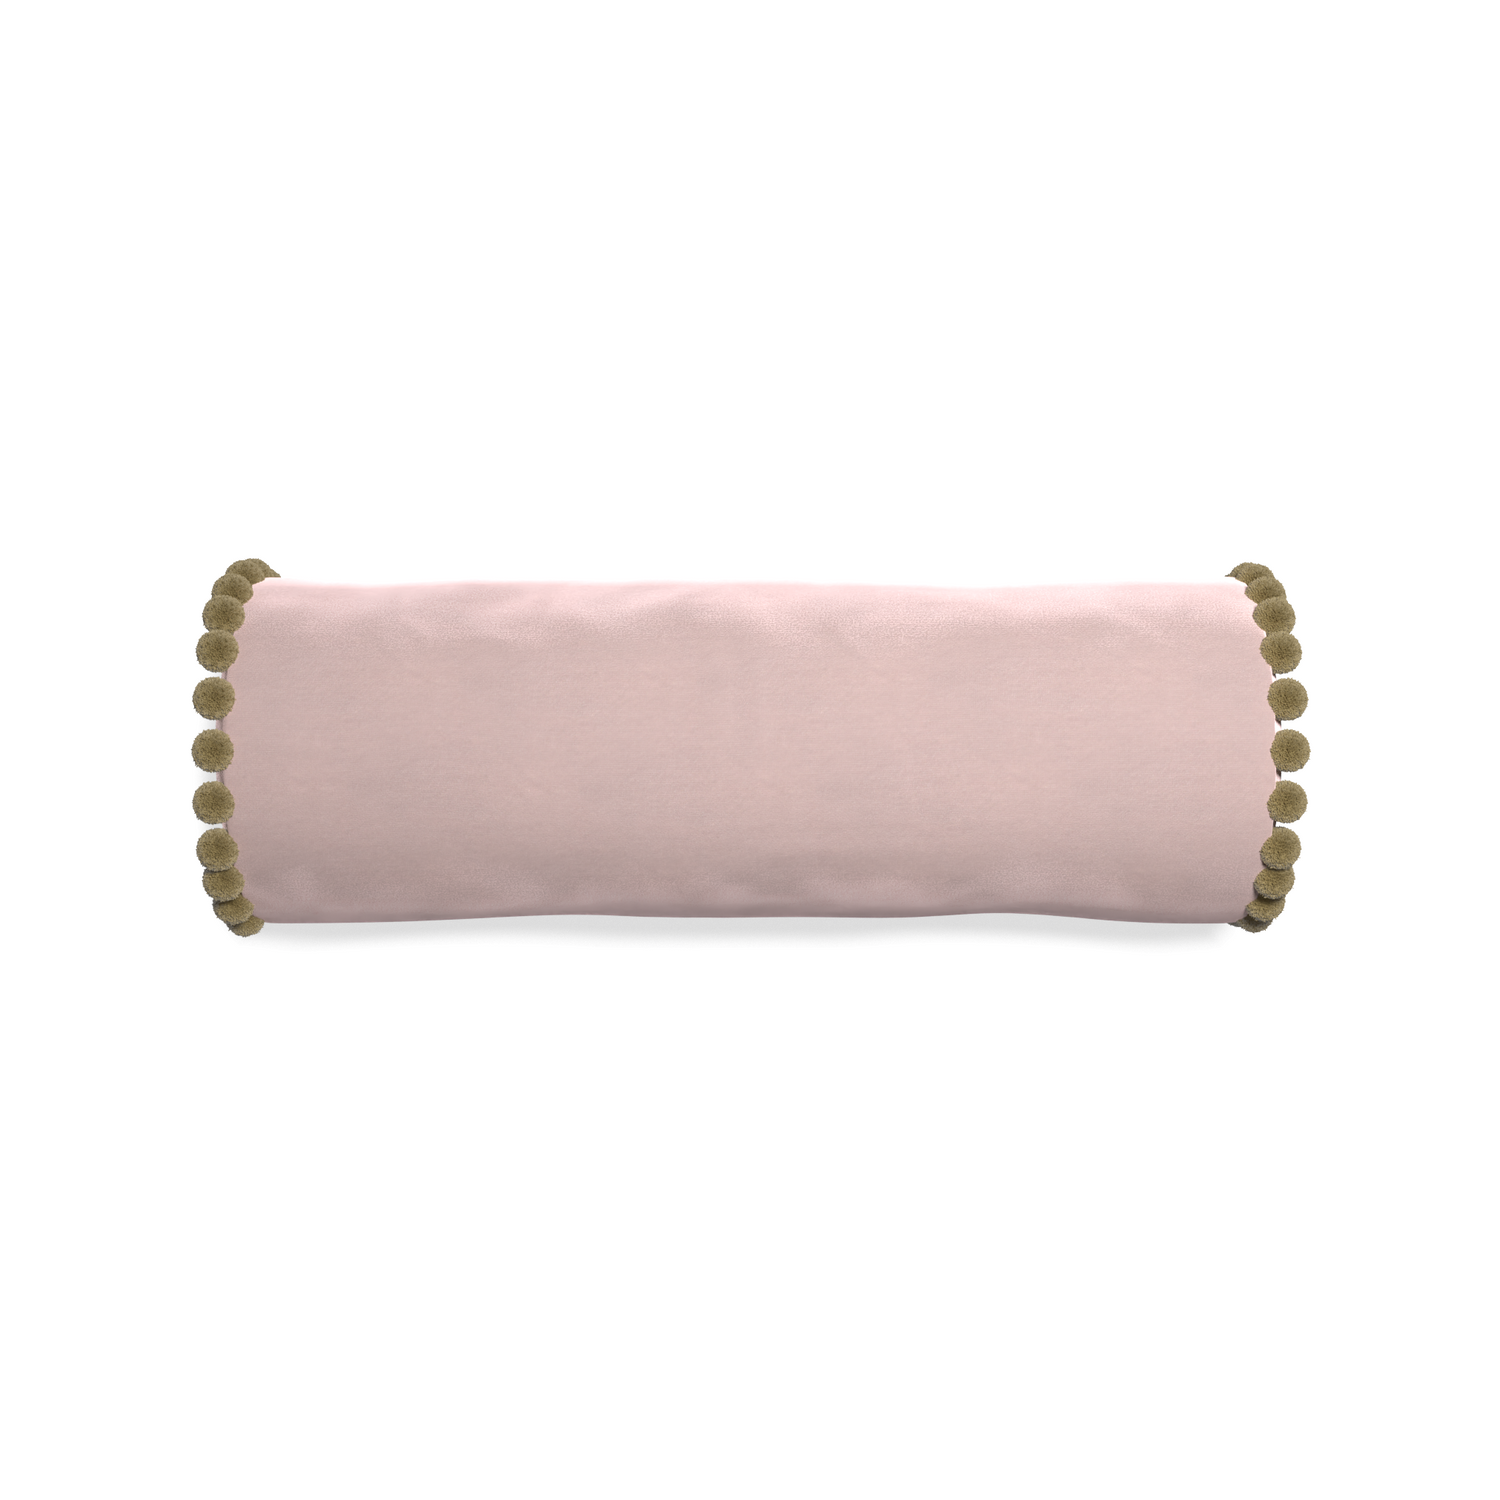 bolster light pink velvet pillow with olive green pom poms